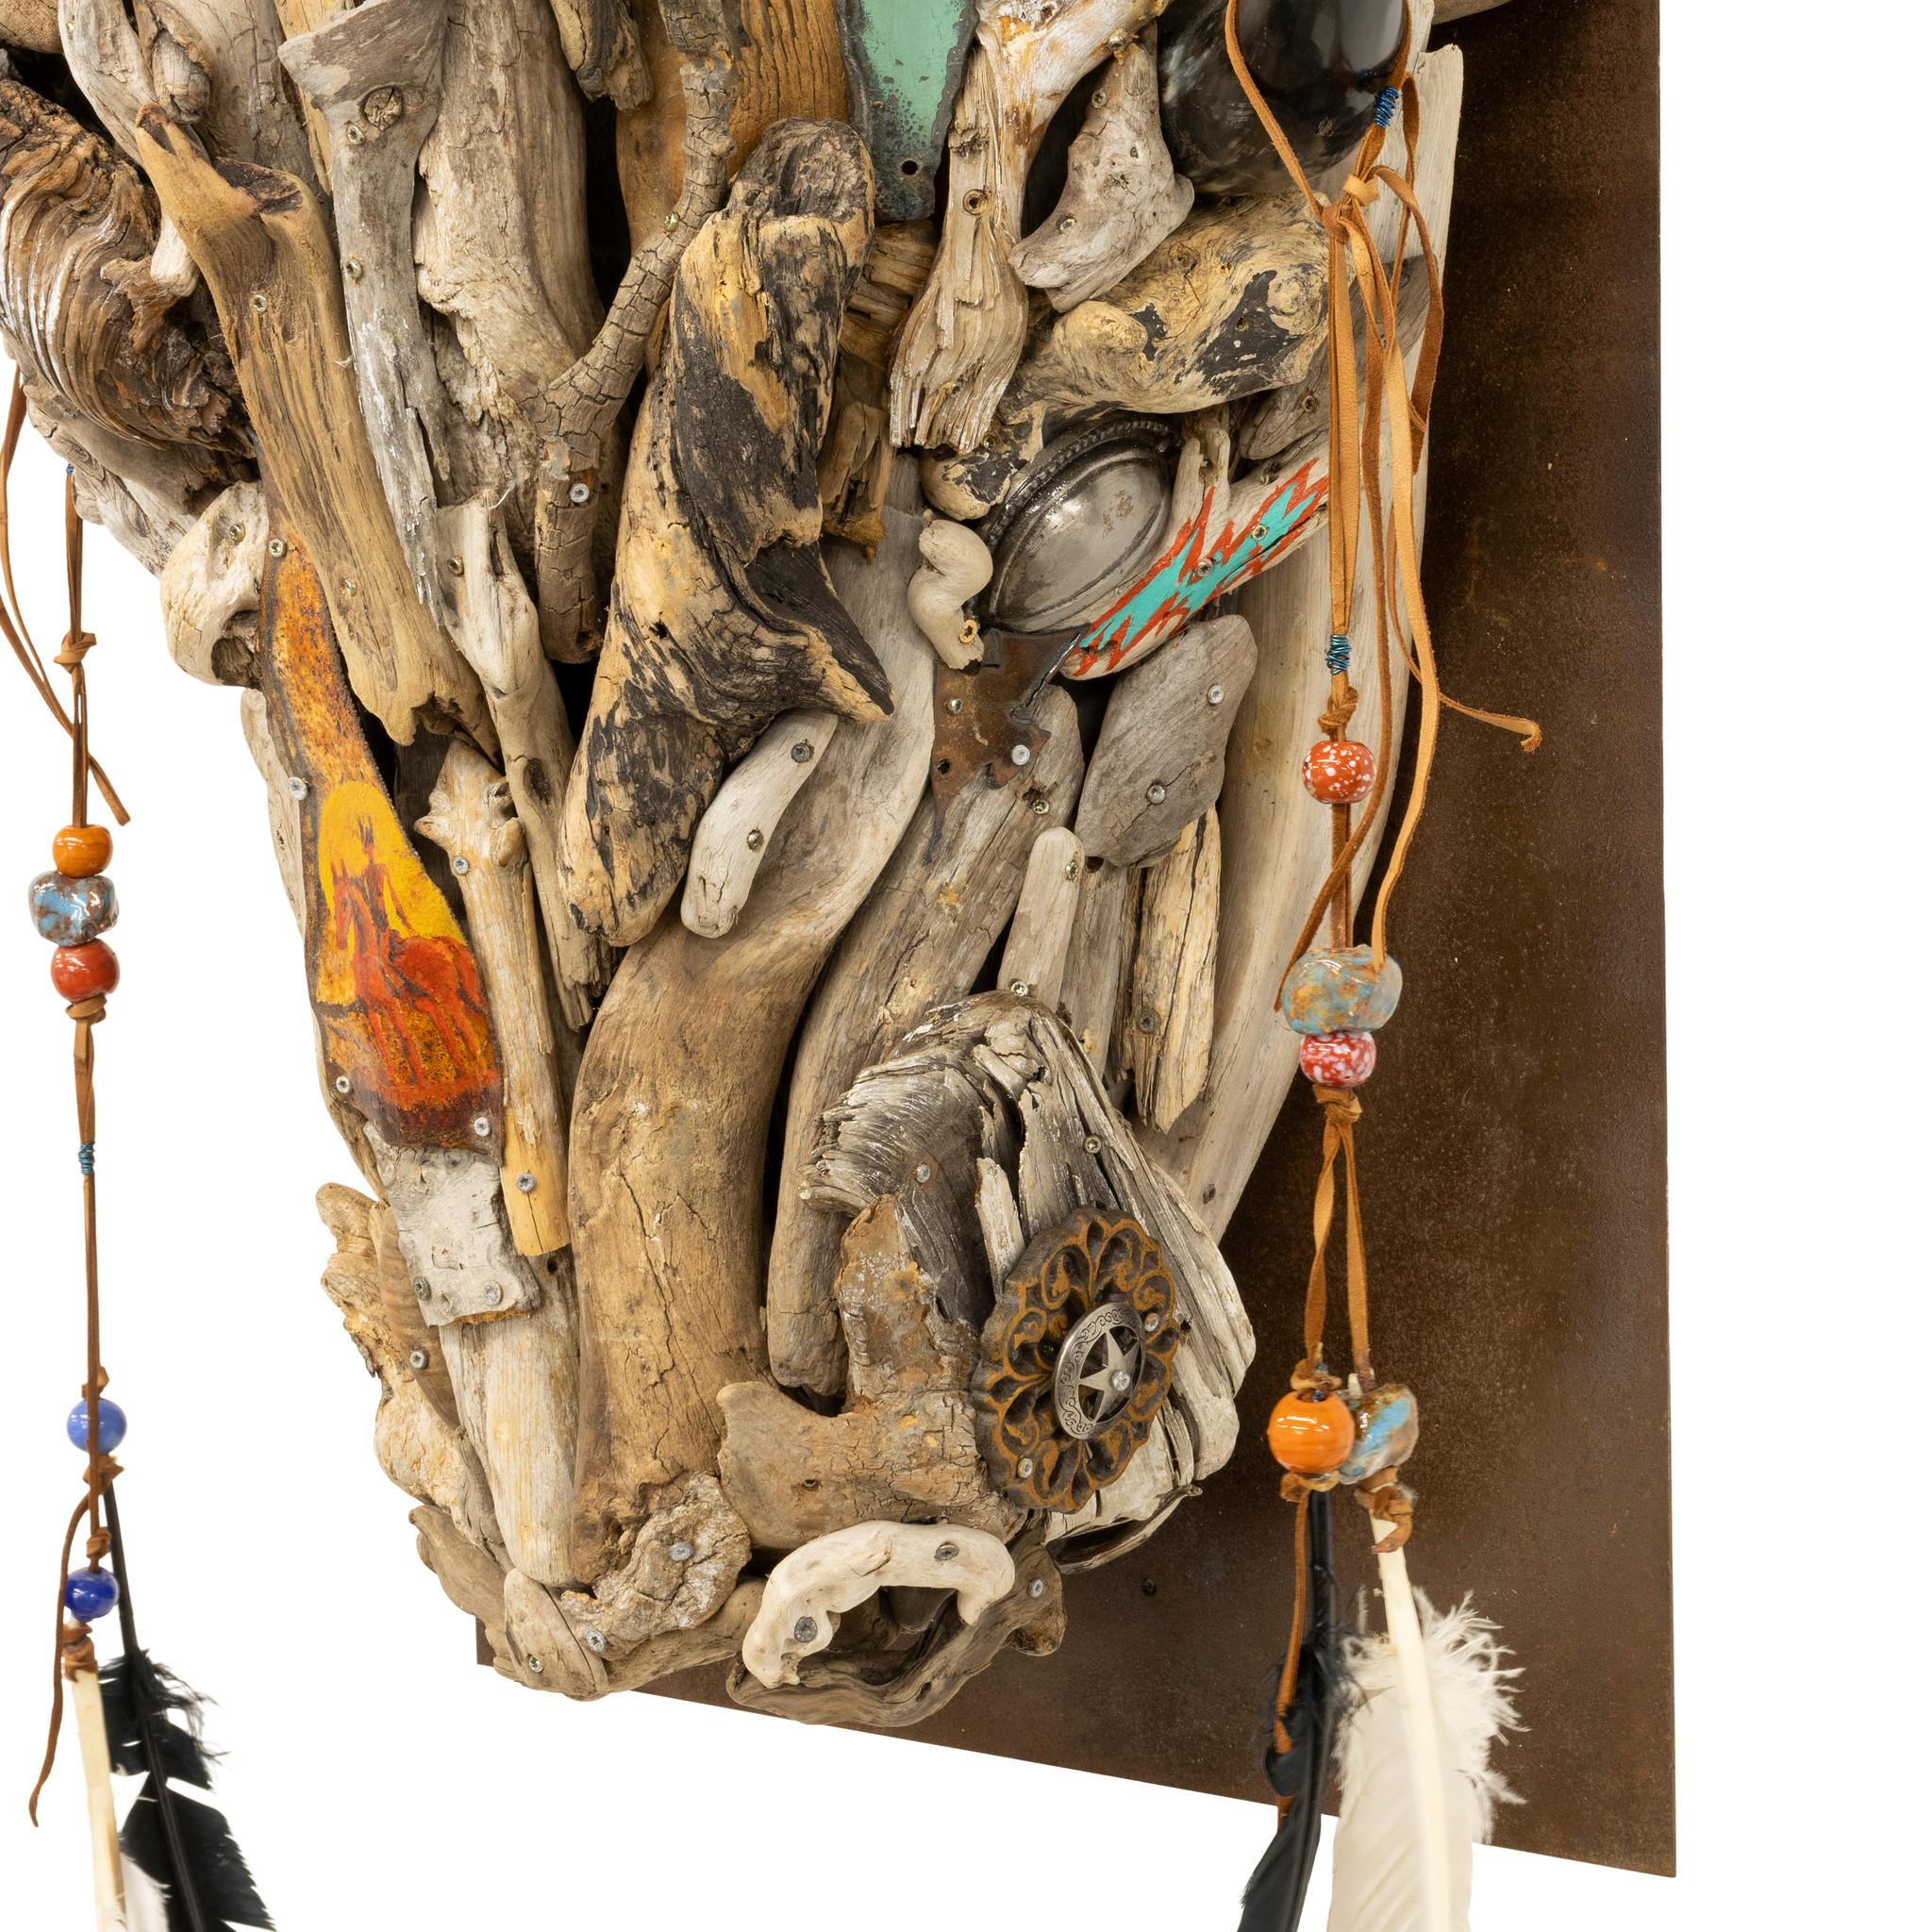 Tête de buffle faite de bois flotté et de ferraille d'un artiste du Montana par Tina Milsavljevich. Tina a grandi dans la beauté du Colorado, dont les montagnes escarpées à couper le souffle et la faune sauvage ont servi de toile de fond paisible et